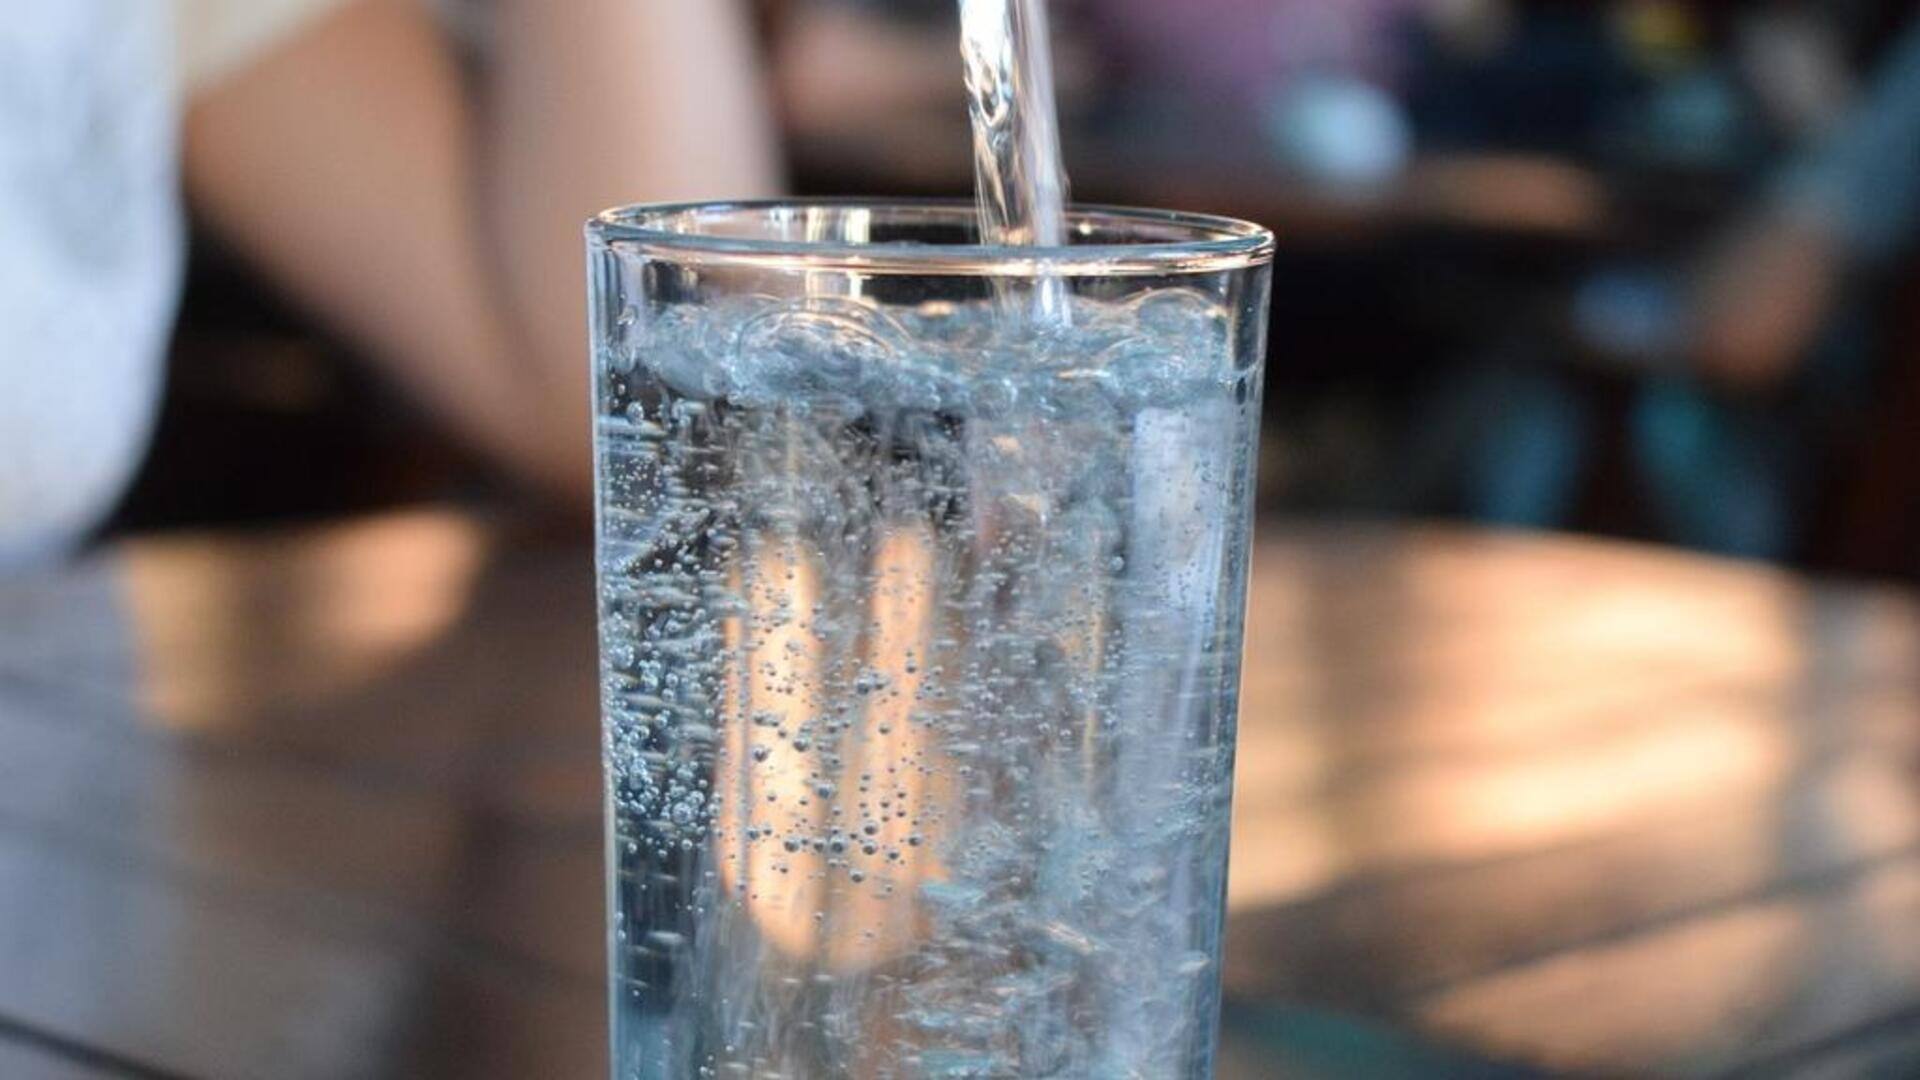 Trik sederhana ini dapat membantu Anda minum lebih banyak air putih